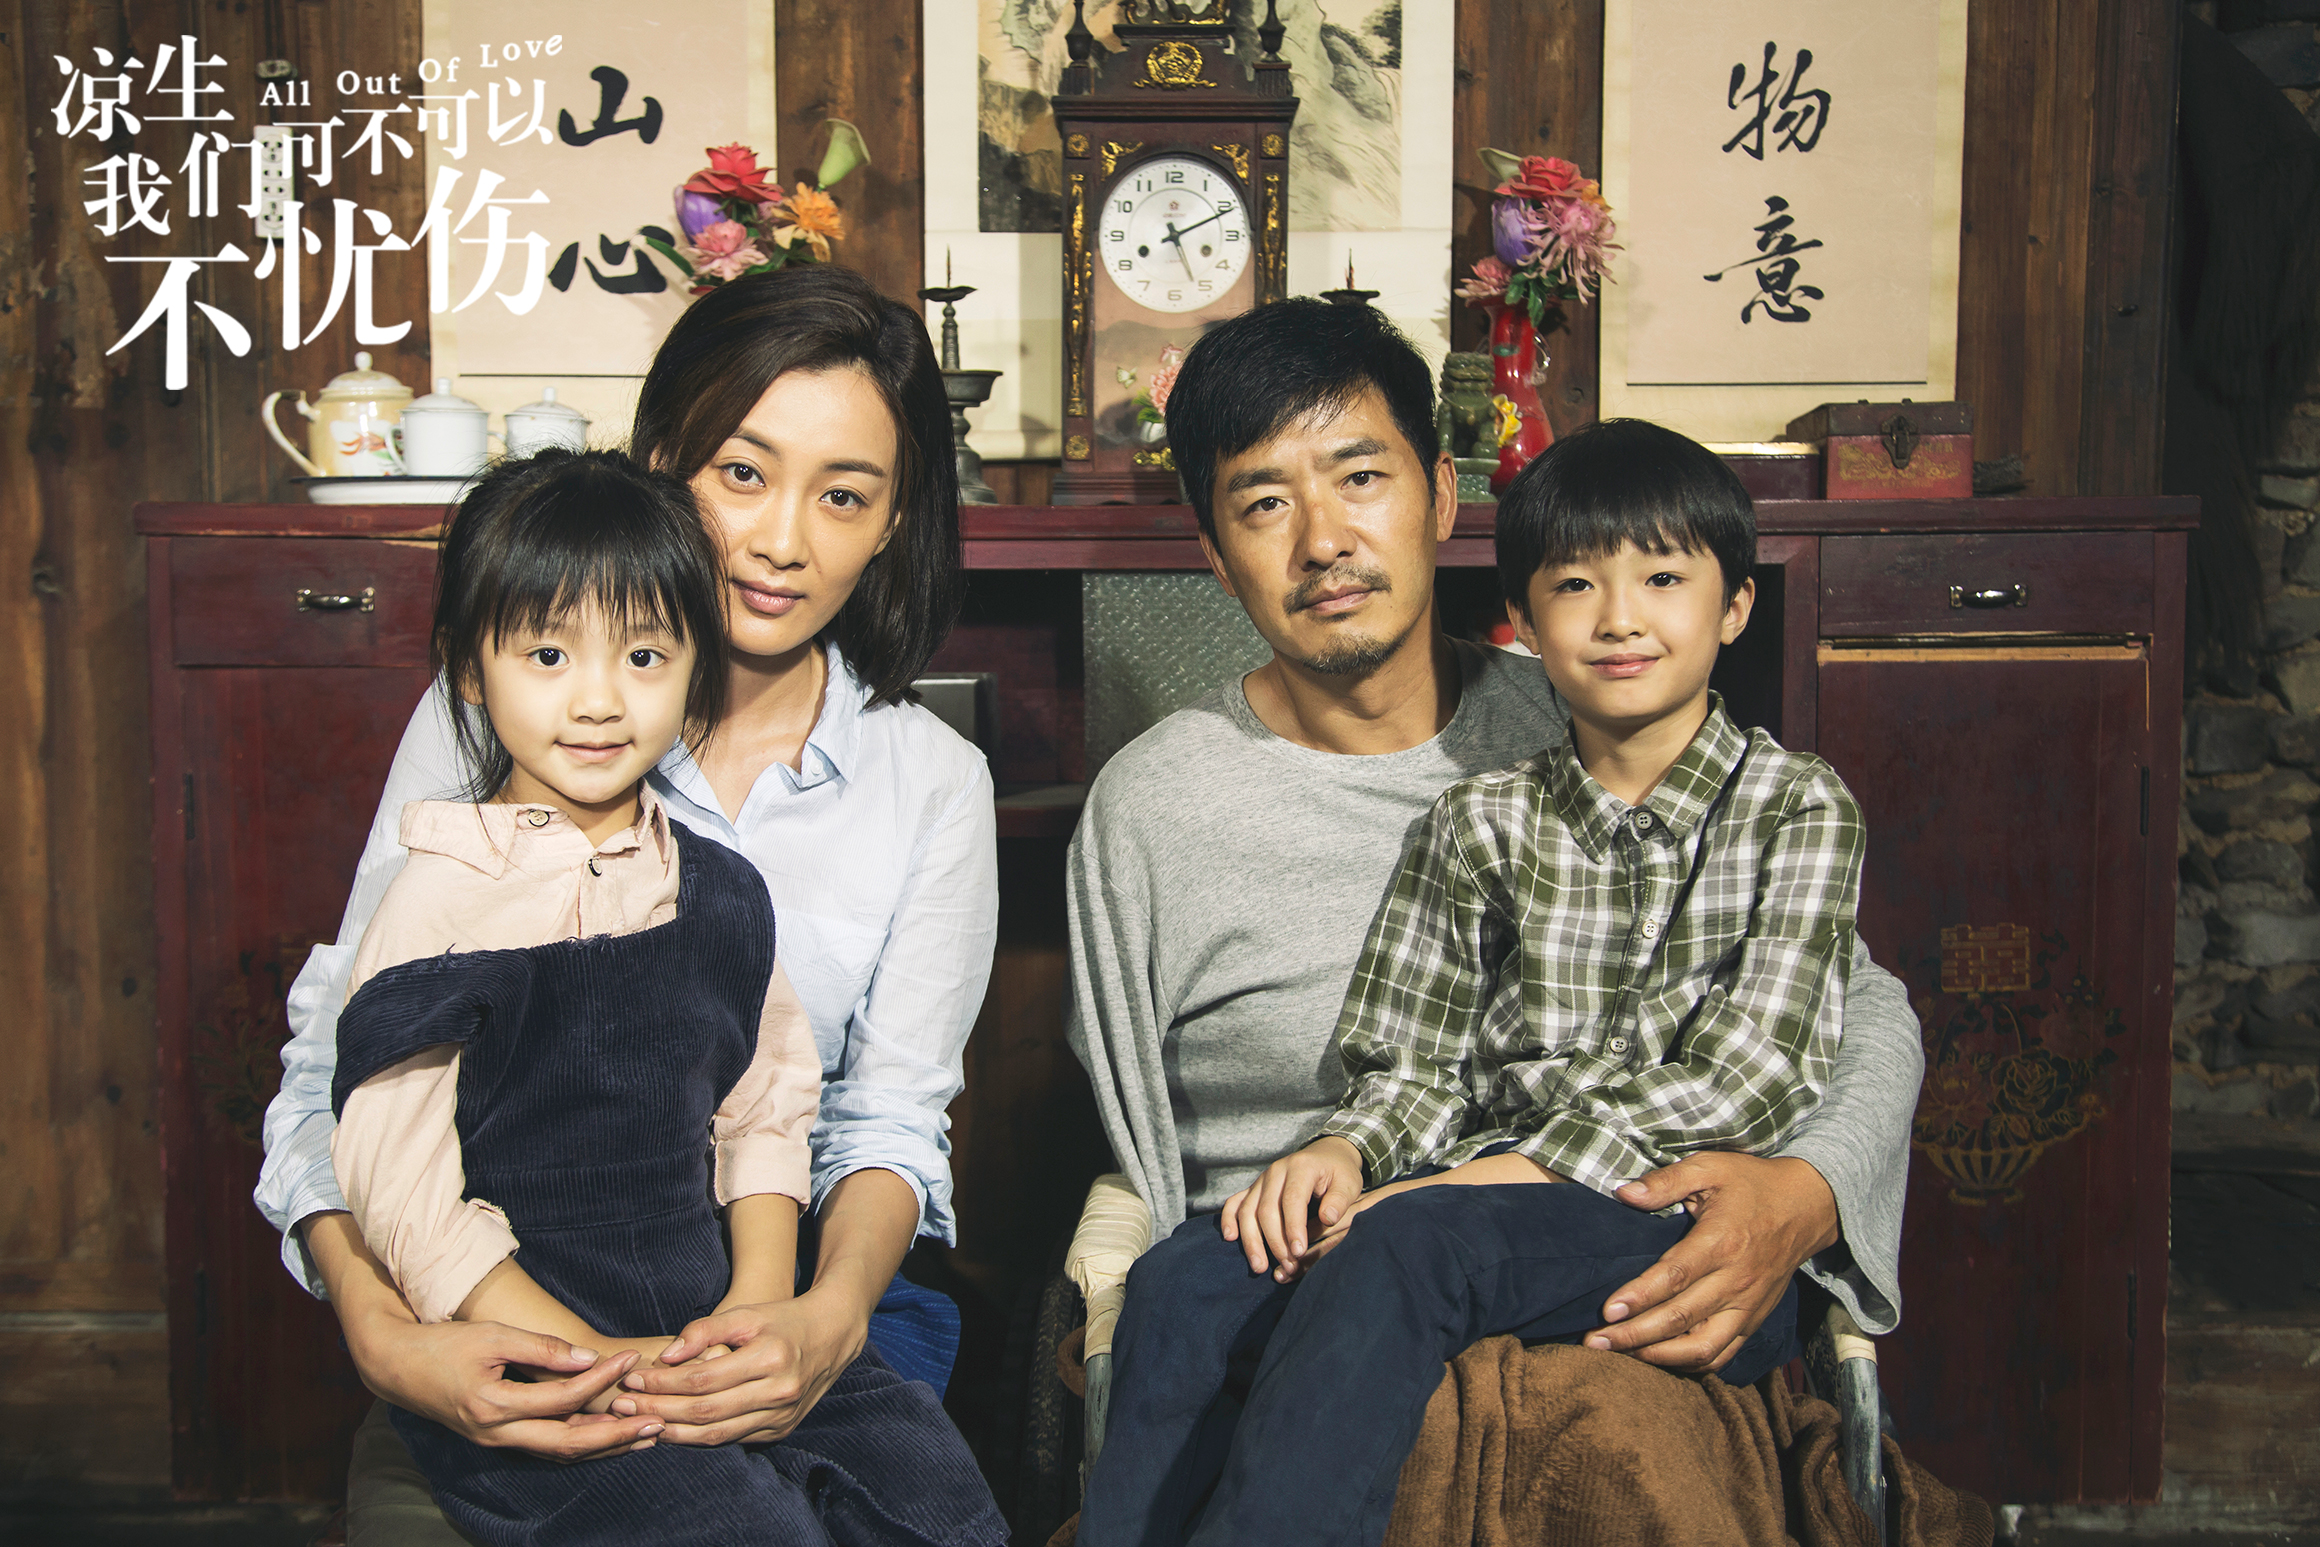 剧中,徐梵溪饰演姜生和凉生的母亲莘茹,从童年到大学将两个孩子带大